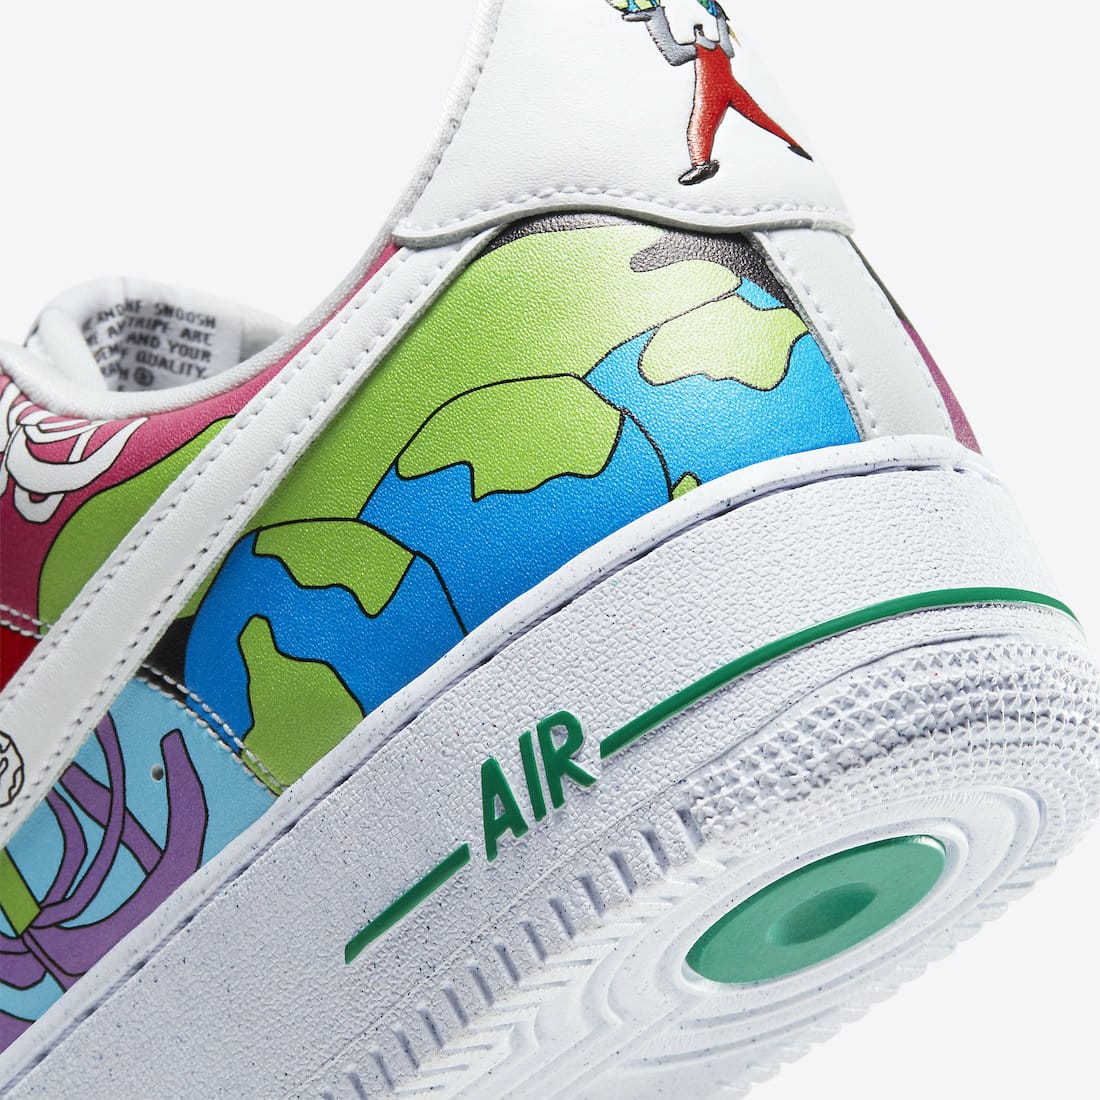 Nike Lunar Air Force 1 : La sneaker que tout le monde s'arrache cet hiver !